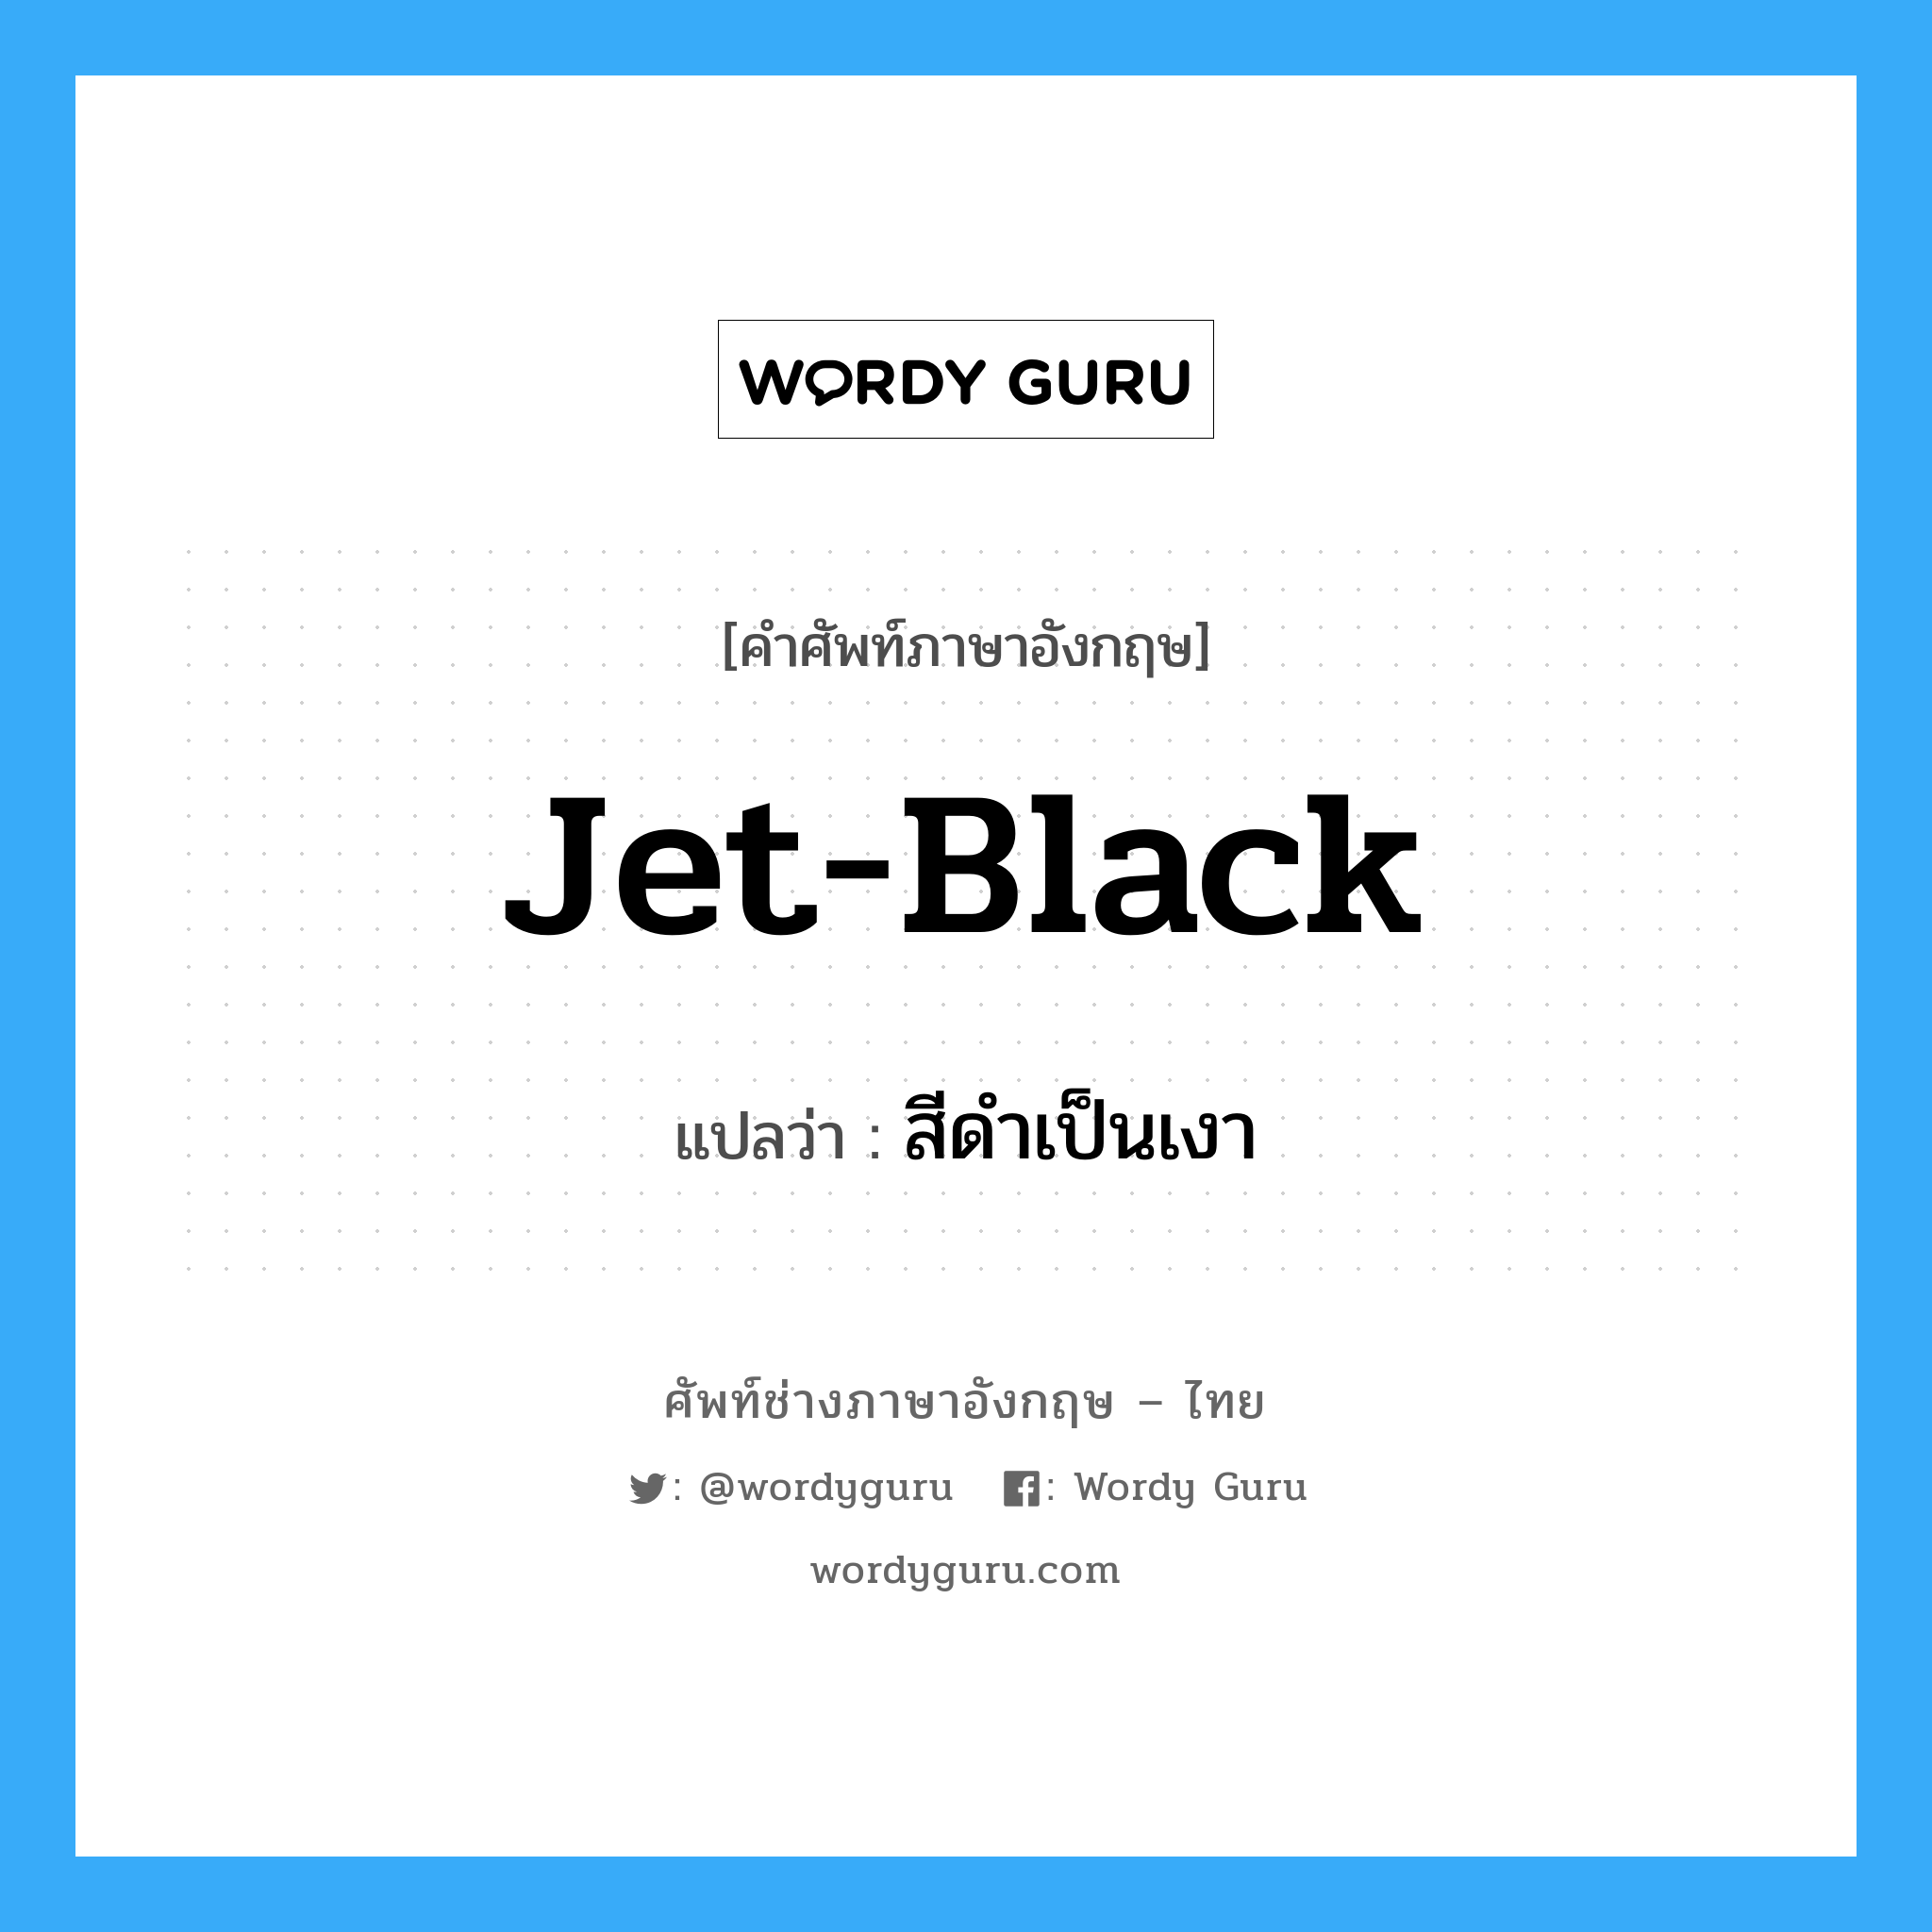 jet-black แปลว่า?, คำศัพท์ช่างภาษาอังกฤษ - ไทย jet-black คำศัพท์ภาษาอังกฤษ jet-black แปลว่า สีดำเป็นเงา